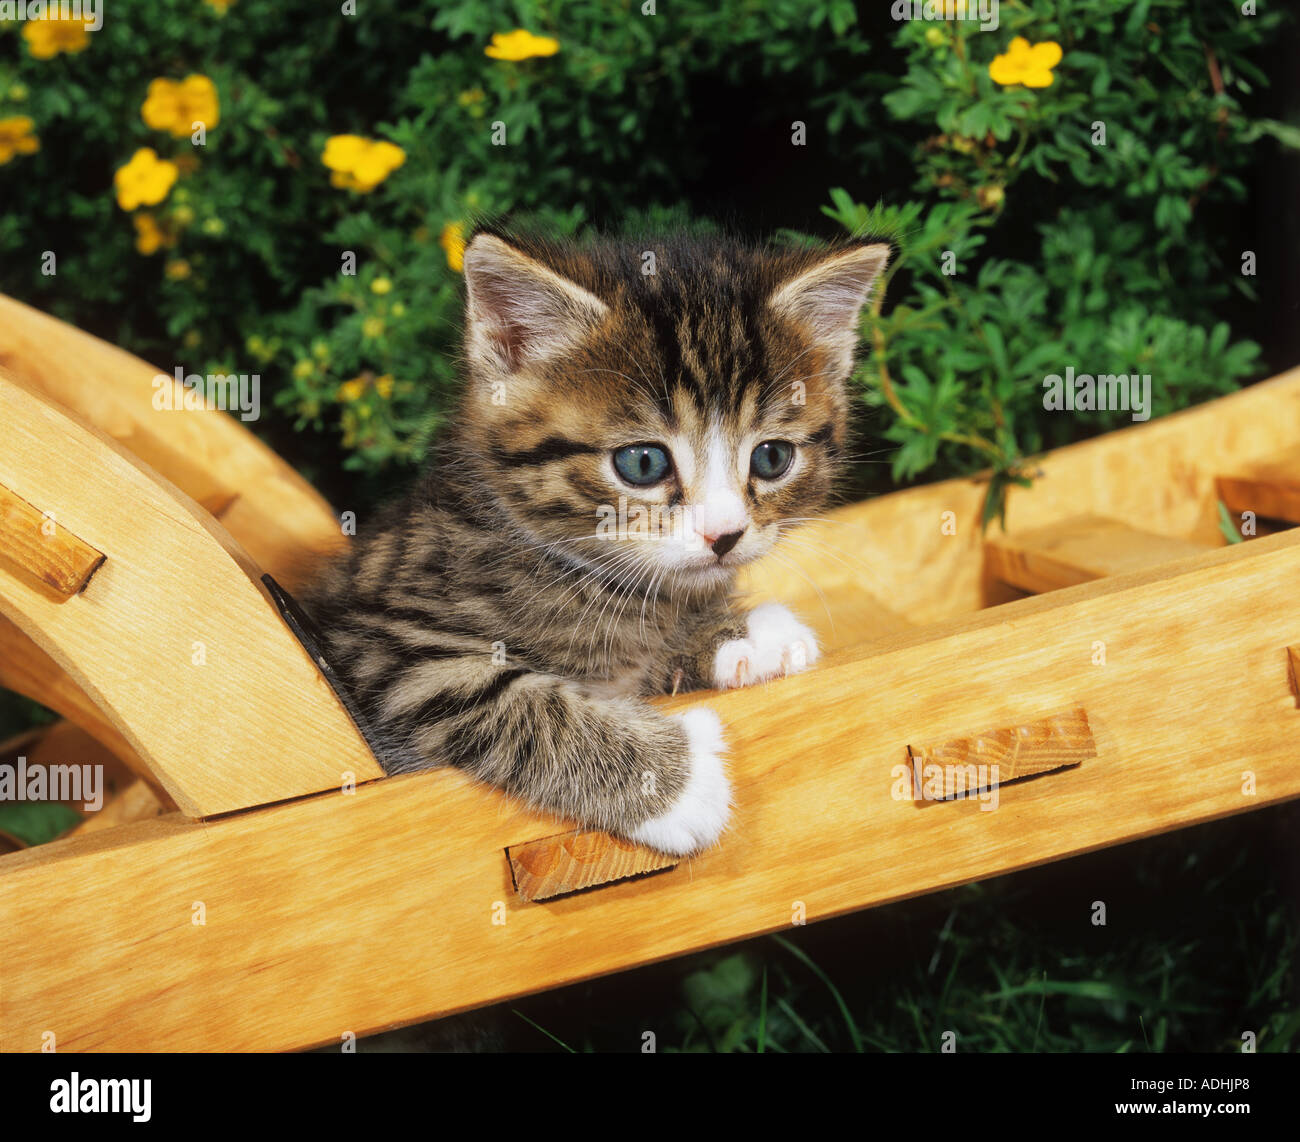 kitten on wheelbarrow Stock Photo